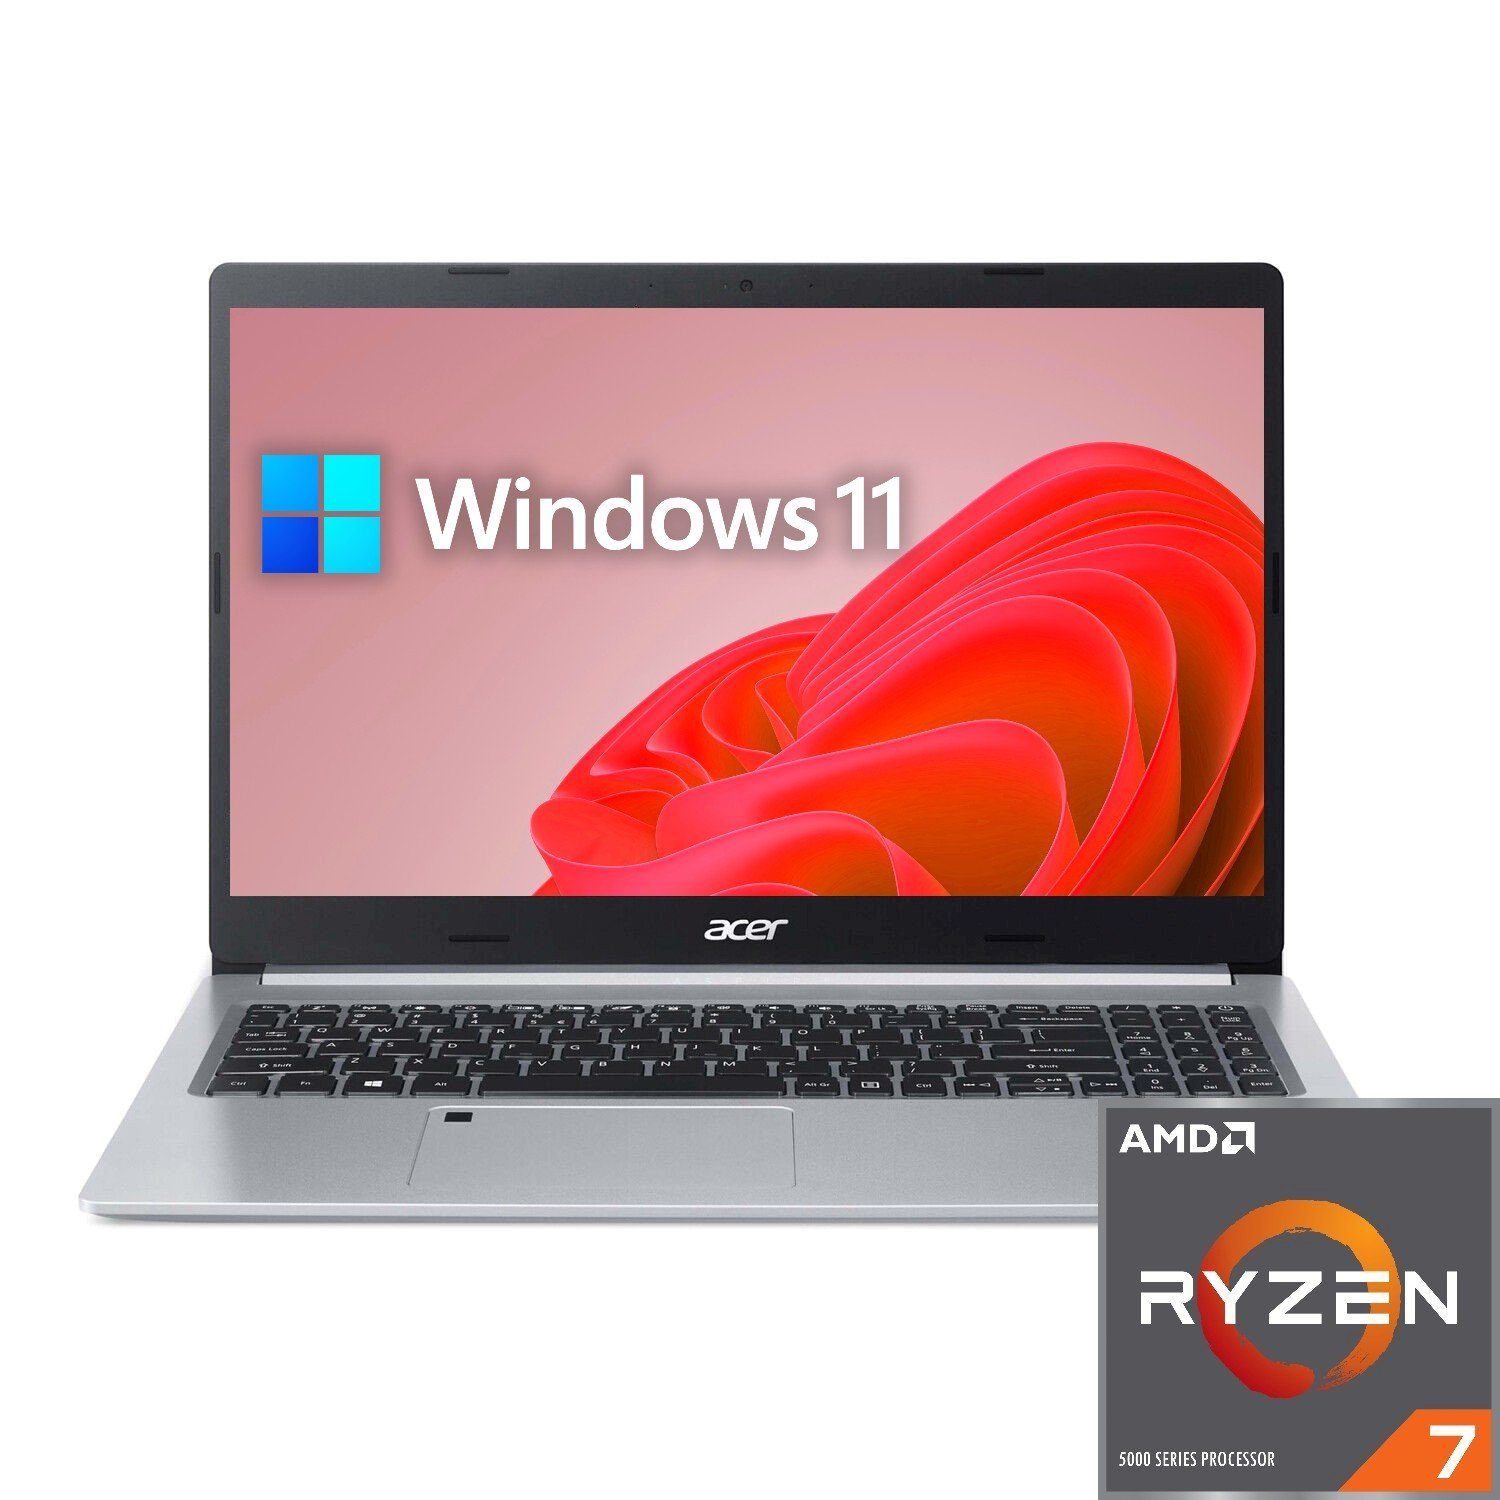 Acer Aspire A515 Notebook (39,00 cm/15.6 Zoll, AMD Ryzen 7 5700U, Radeon,  500 GB SSD, 8-core CPU, Tastaturbeleuchtung), Microsoft Windows 11  Professional ist vorinstalliert und sofort einsatzbereit